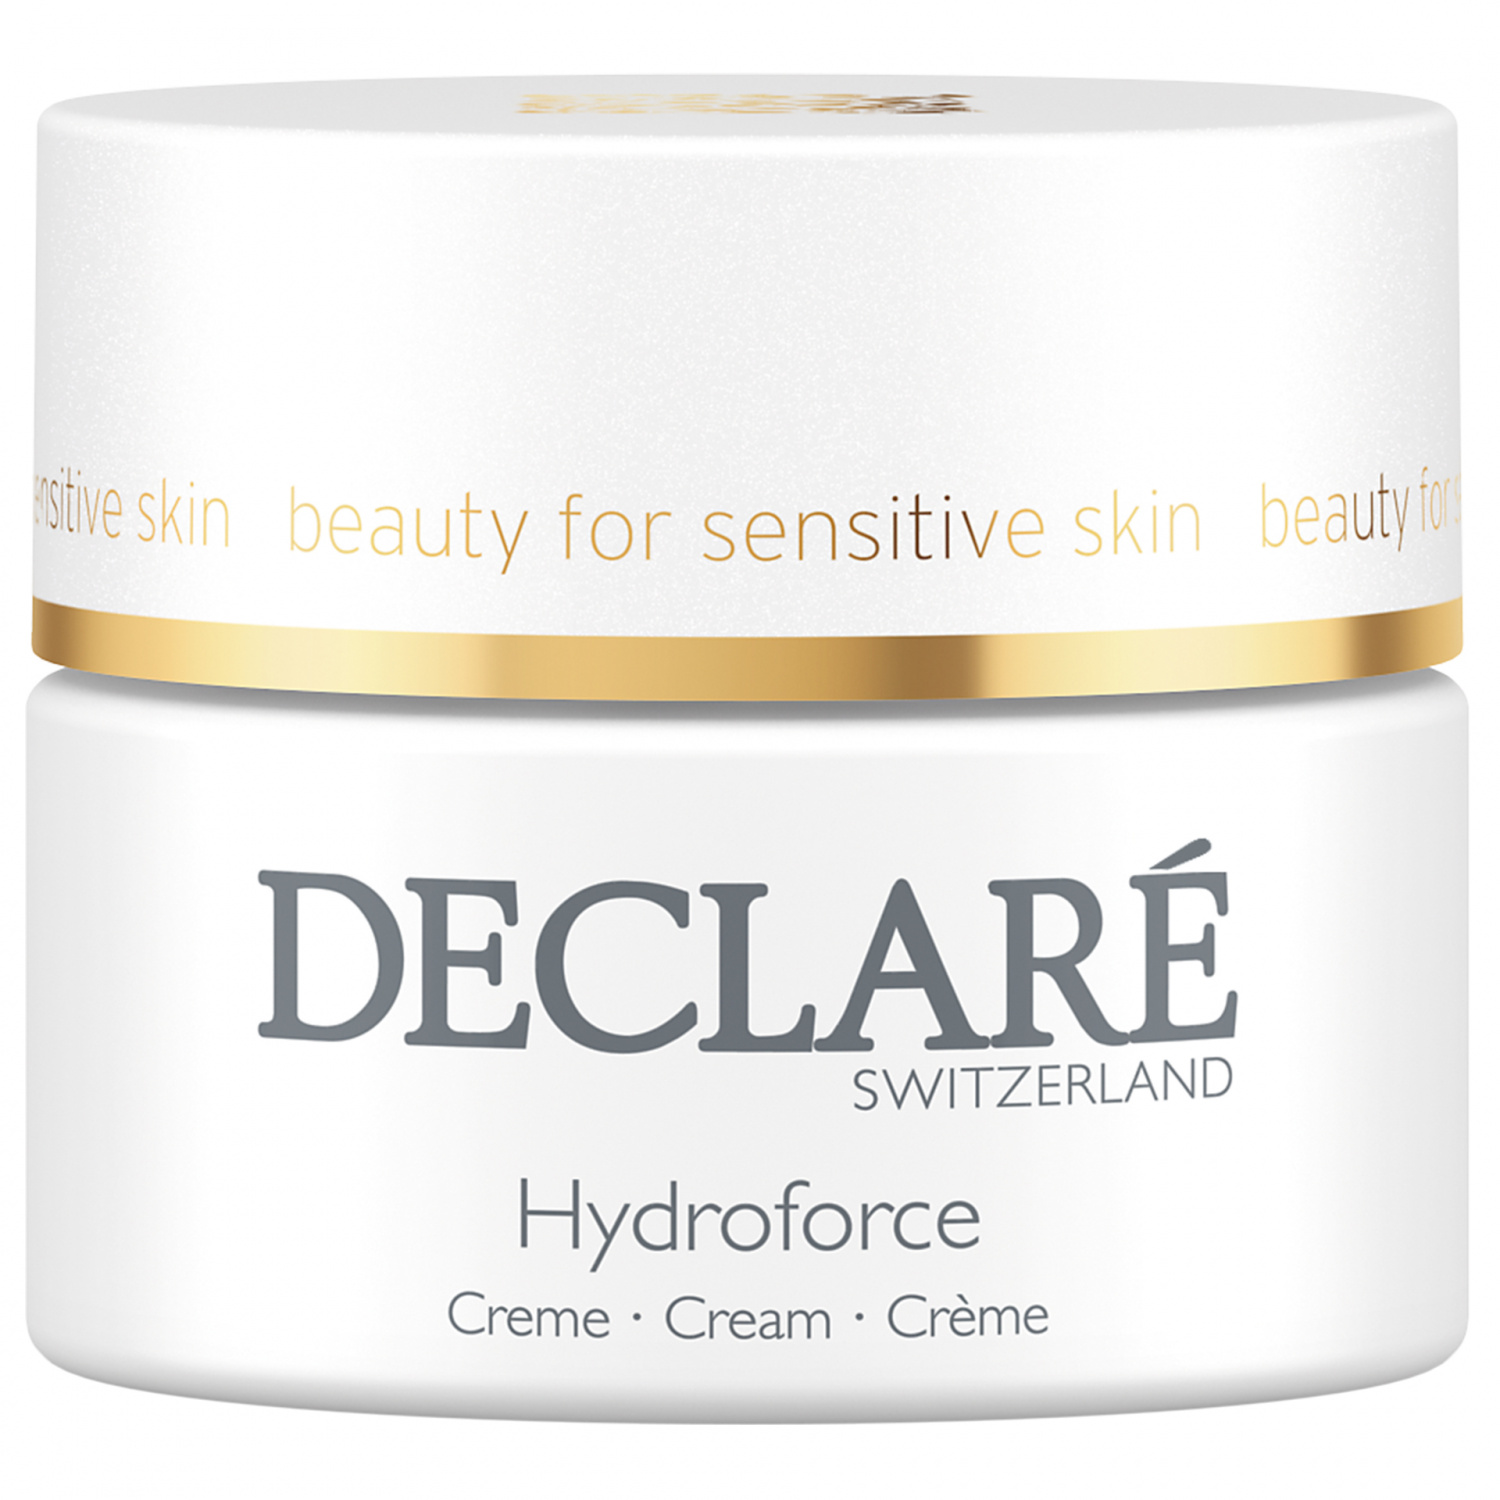 Declare Hydroforce Cream 50ml. - интернет-магазин профессиональной косметики Spadream, изображение 30742